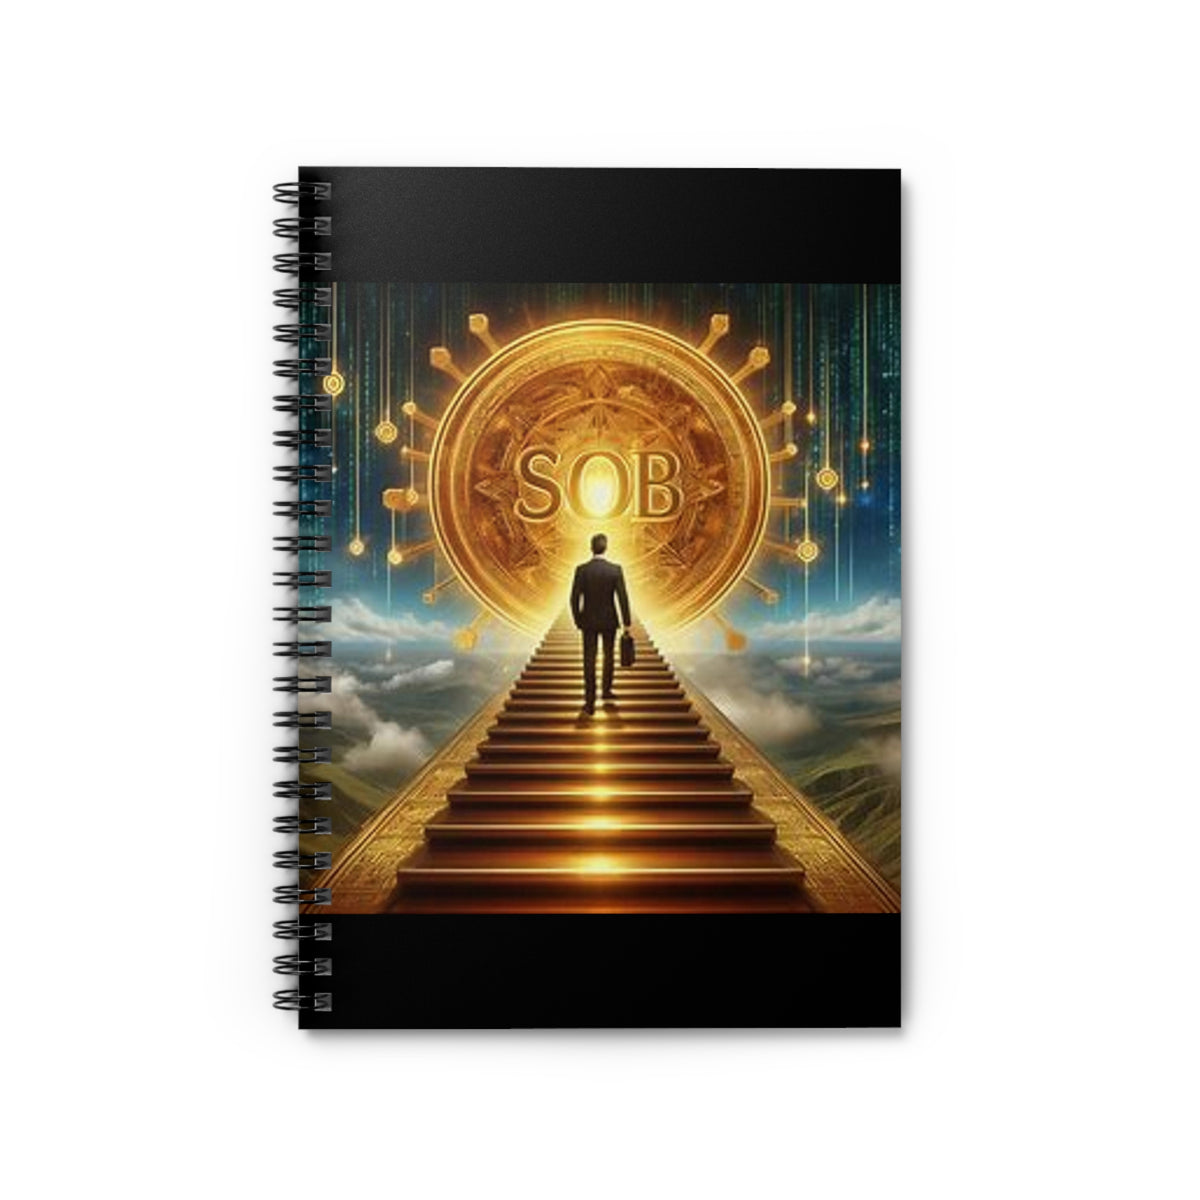 Ascension SOB Spiral Notebook - Ruled Line